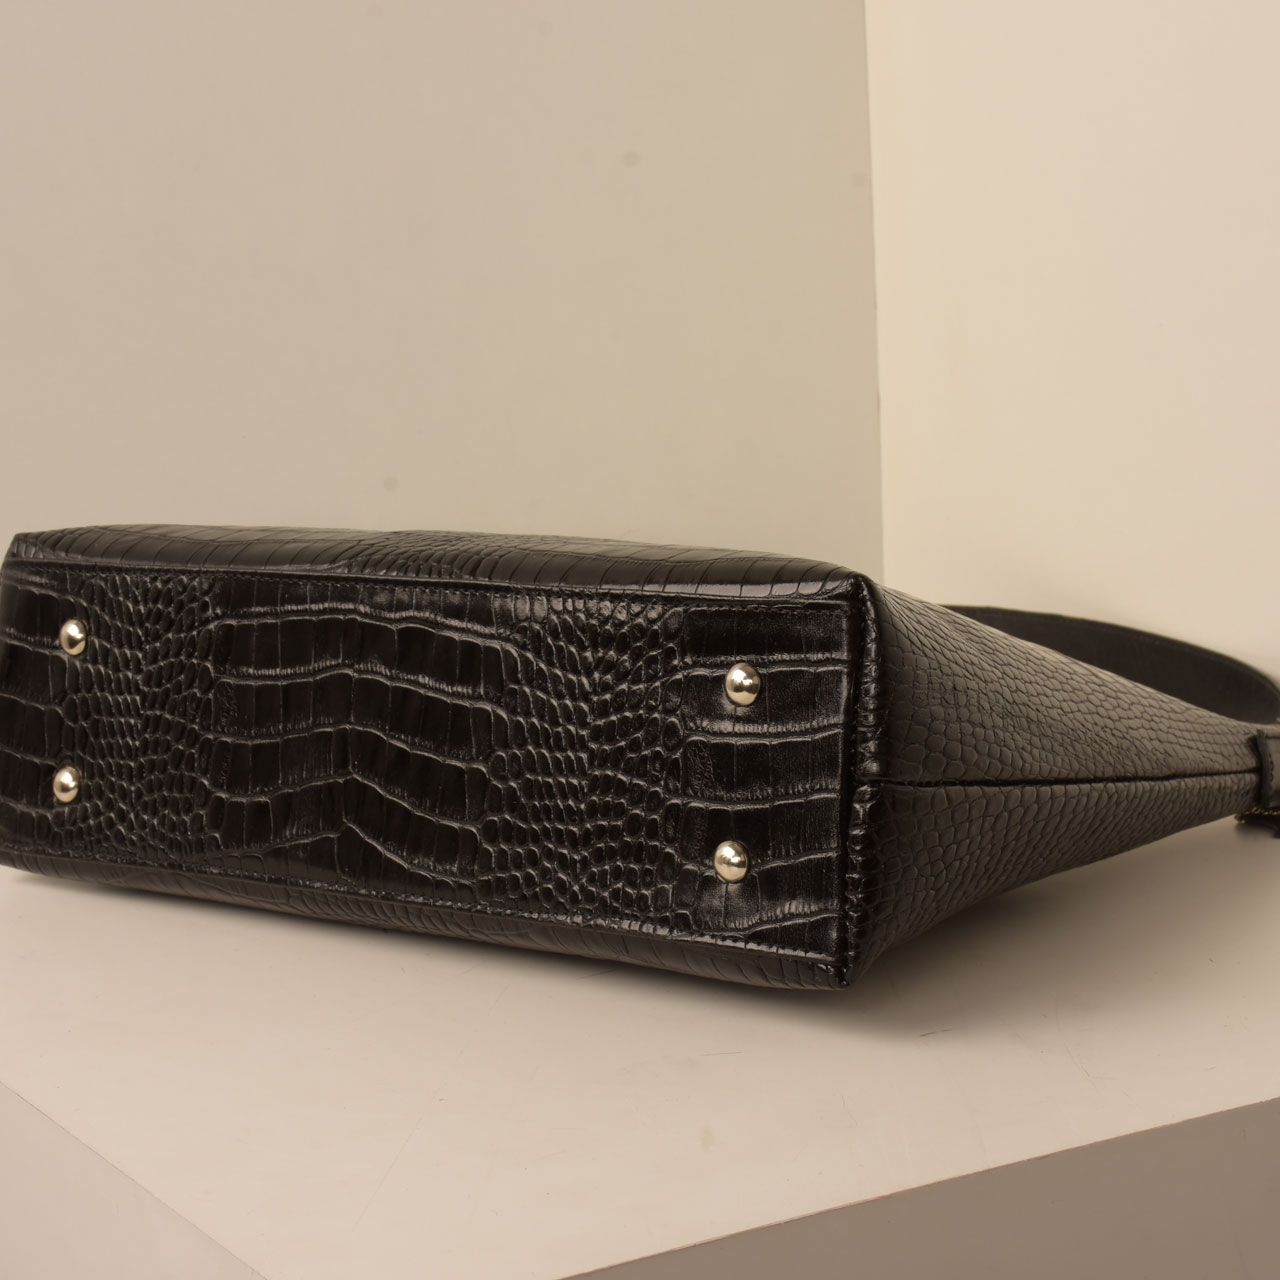  کیف دوشی زنانه پارینه چرم مدل V203-1 -  - 10